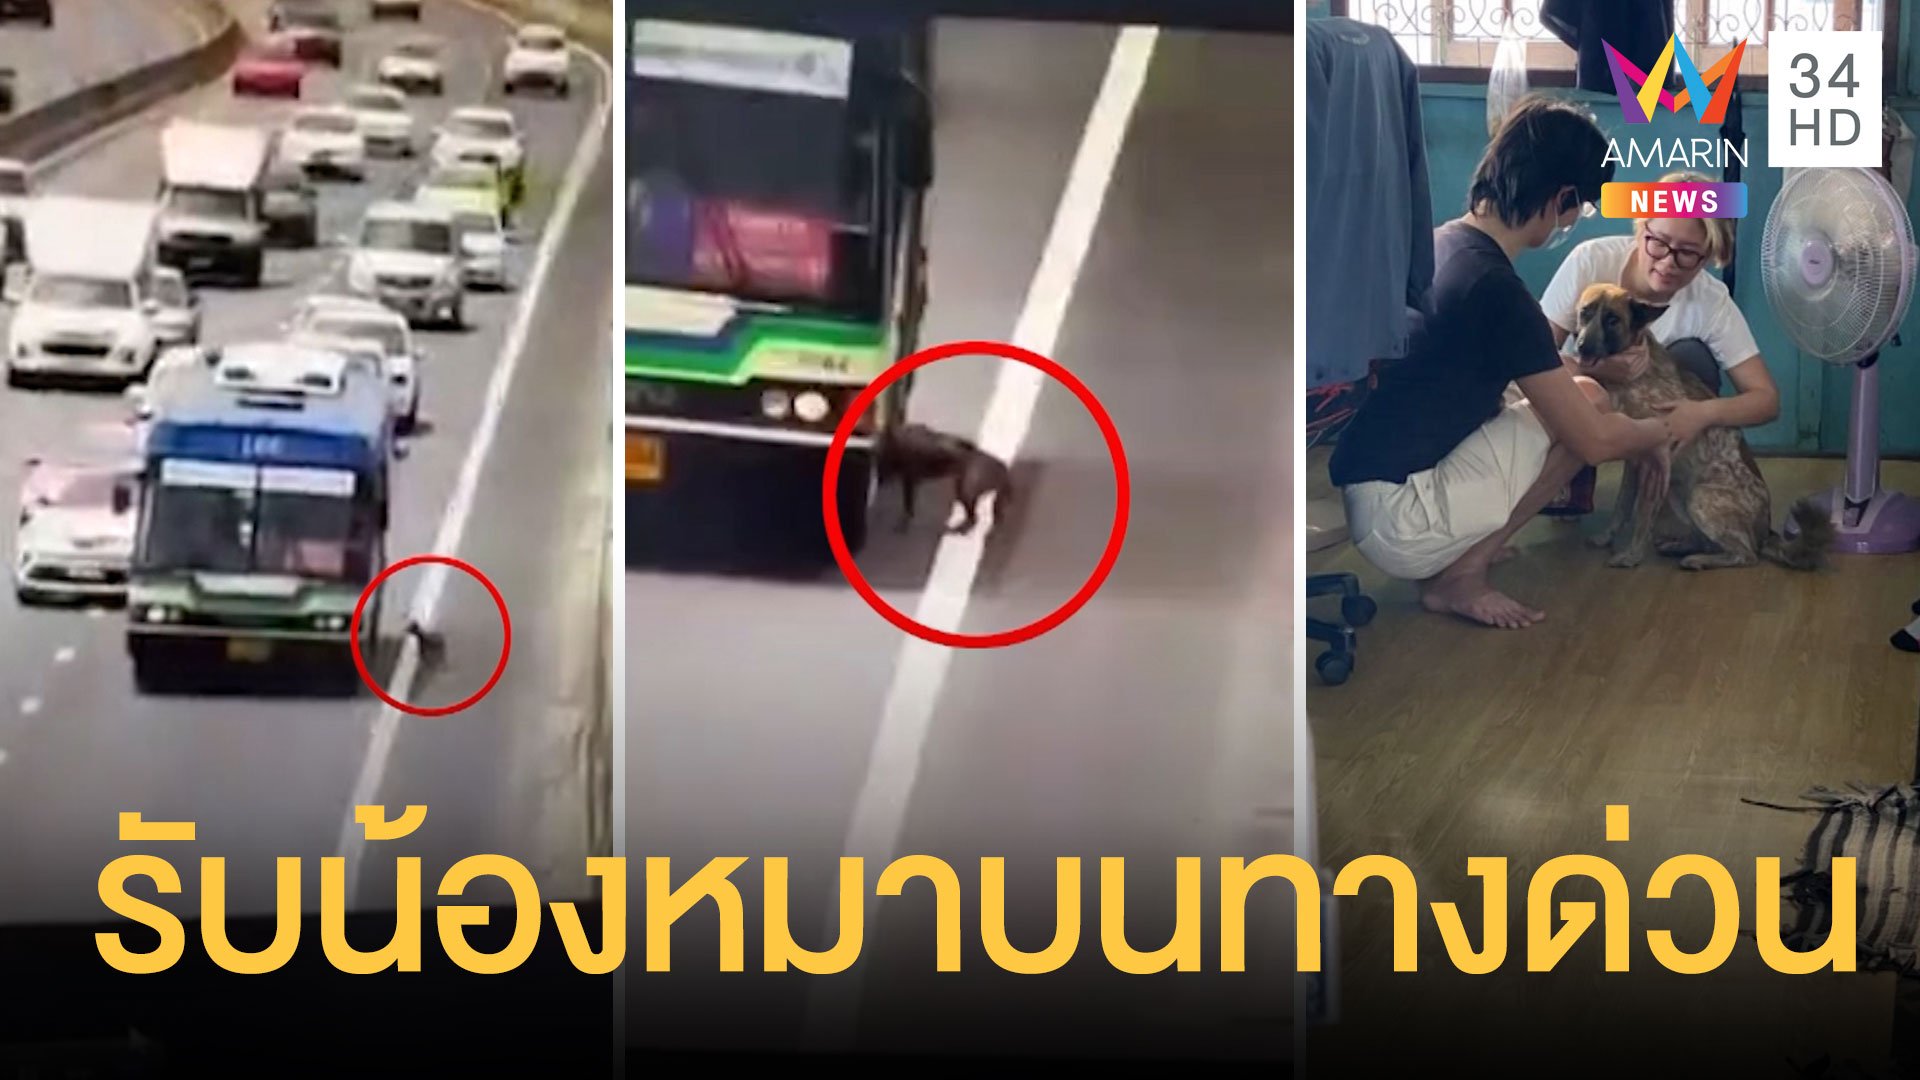 รถเมล์จอดรับหมาบนทางด่วน ตามหาเจ้าของจนเจอ | ข่าวอรุณอมรินทร์ | 31 มี.ค. 64 | AMARIN TVHD34